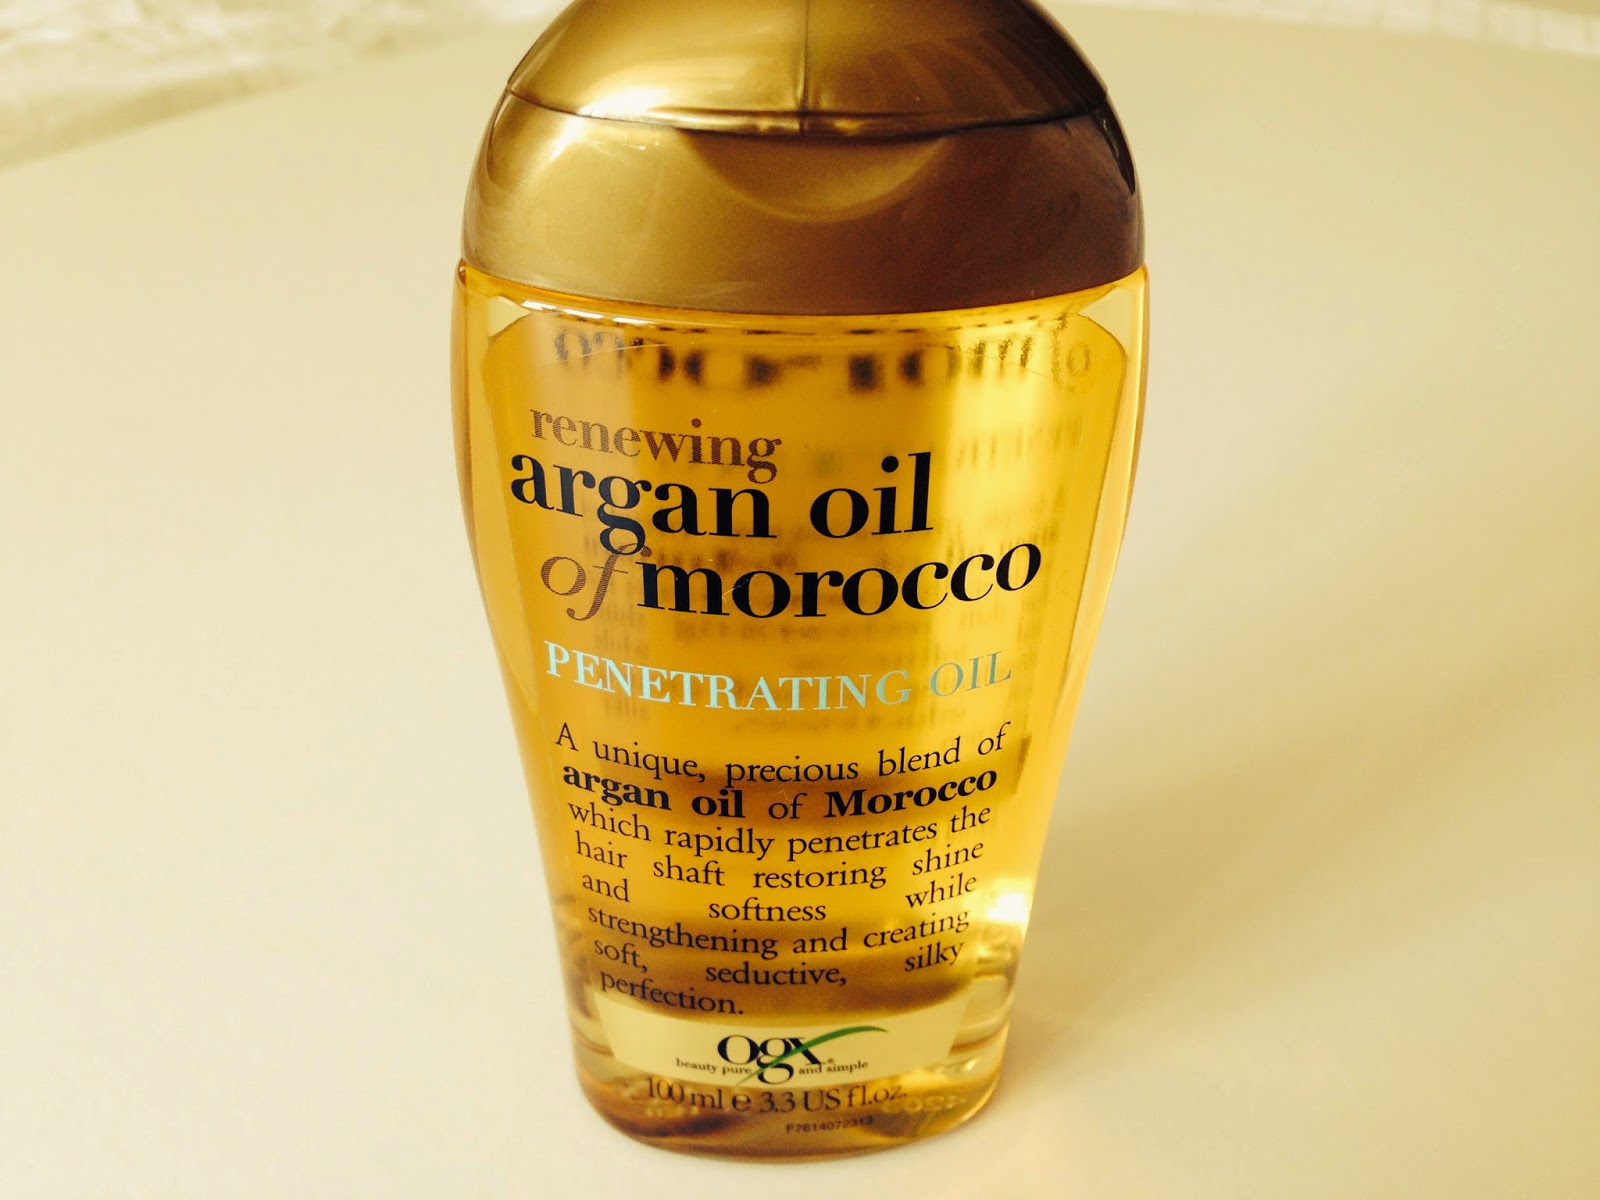 Argan Oil for Skin